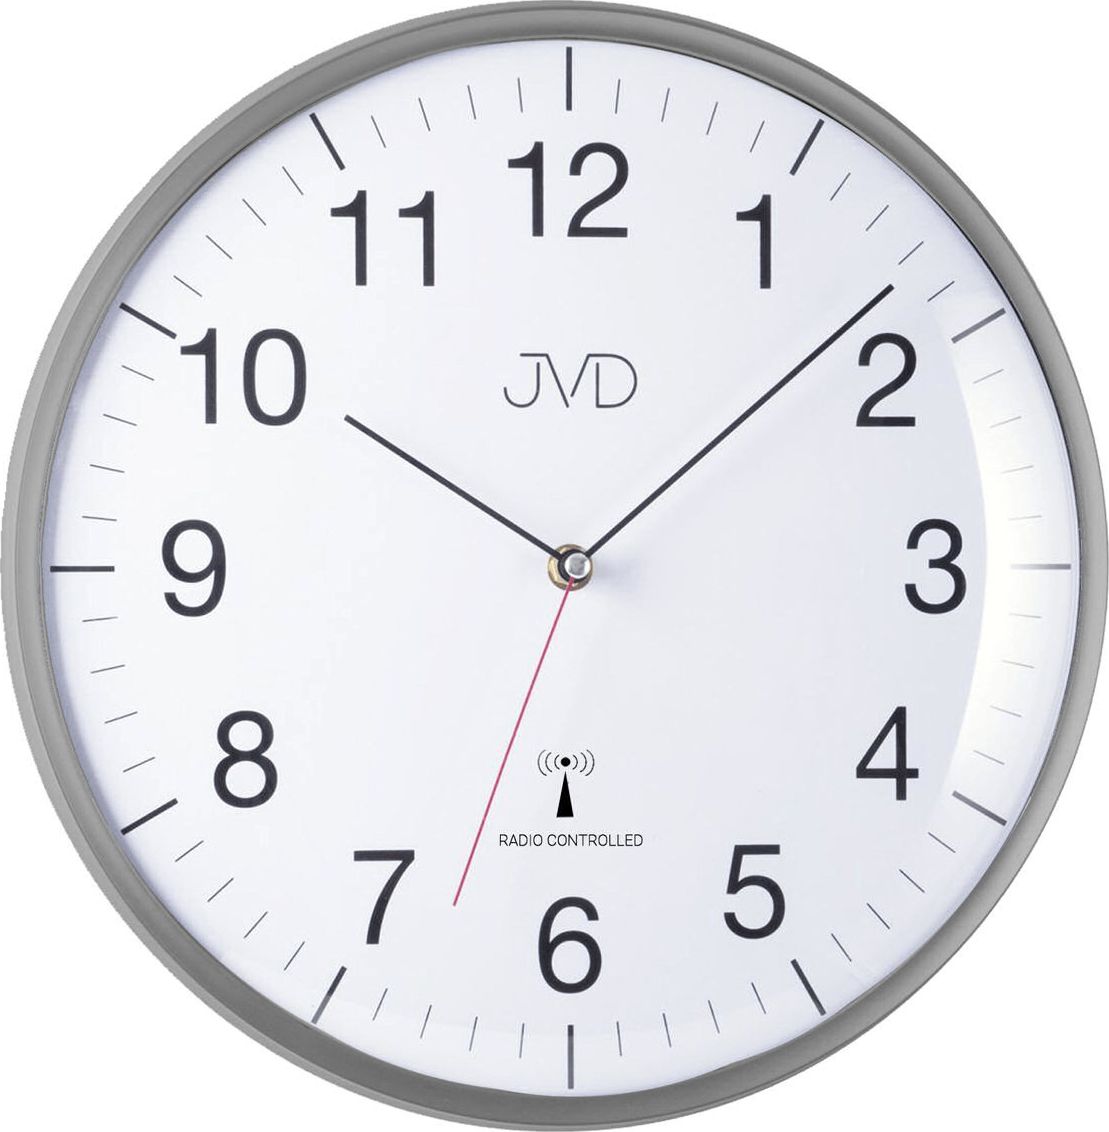 Zdjęcia - Radioodbiorniki / zegar JVD Zegar ścienny uniwersalny RH16.2 33 cm 